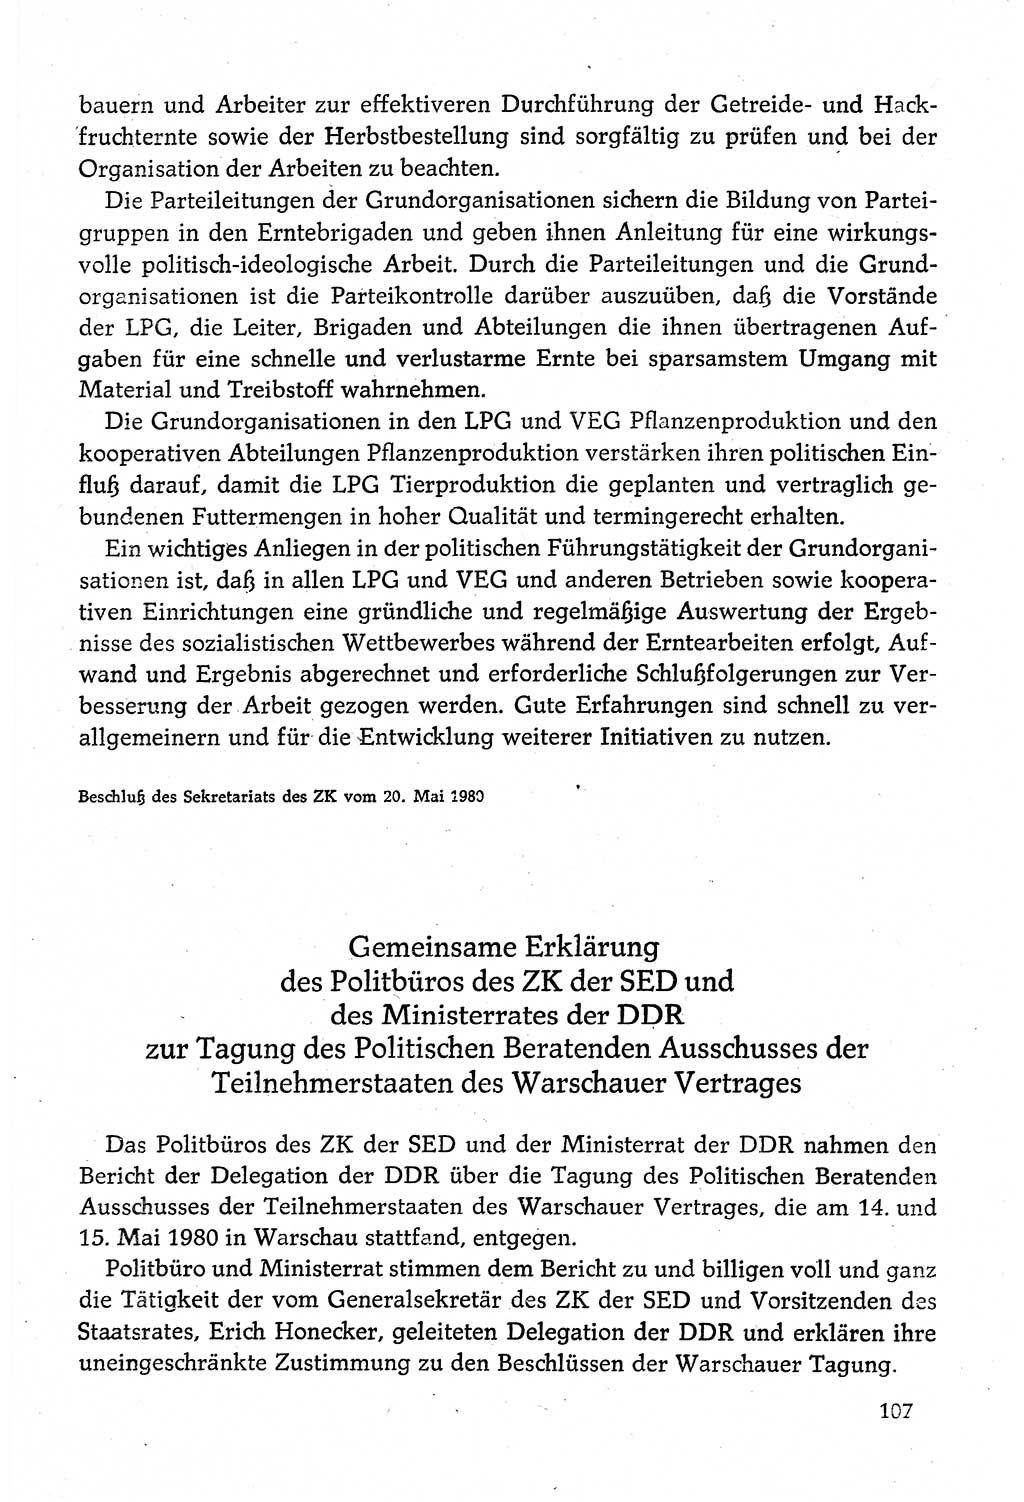 Dokumente der Sozialistischen Einheitspartei Deutschlands (SED) [Deutsche Demokratische Republik (DDR)] 1980-1981, Seite 107 (Dok. SED DDR 1980-1981, S. 107)